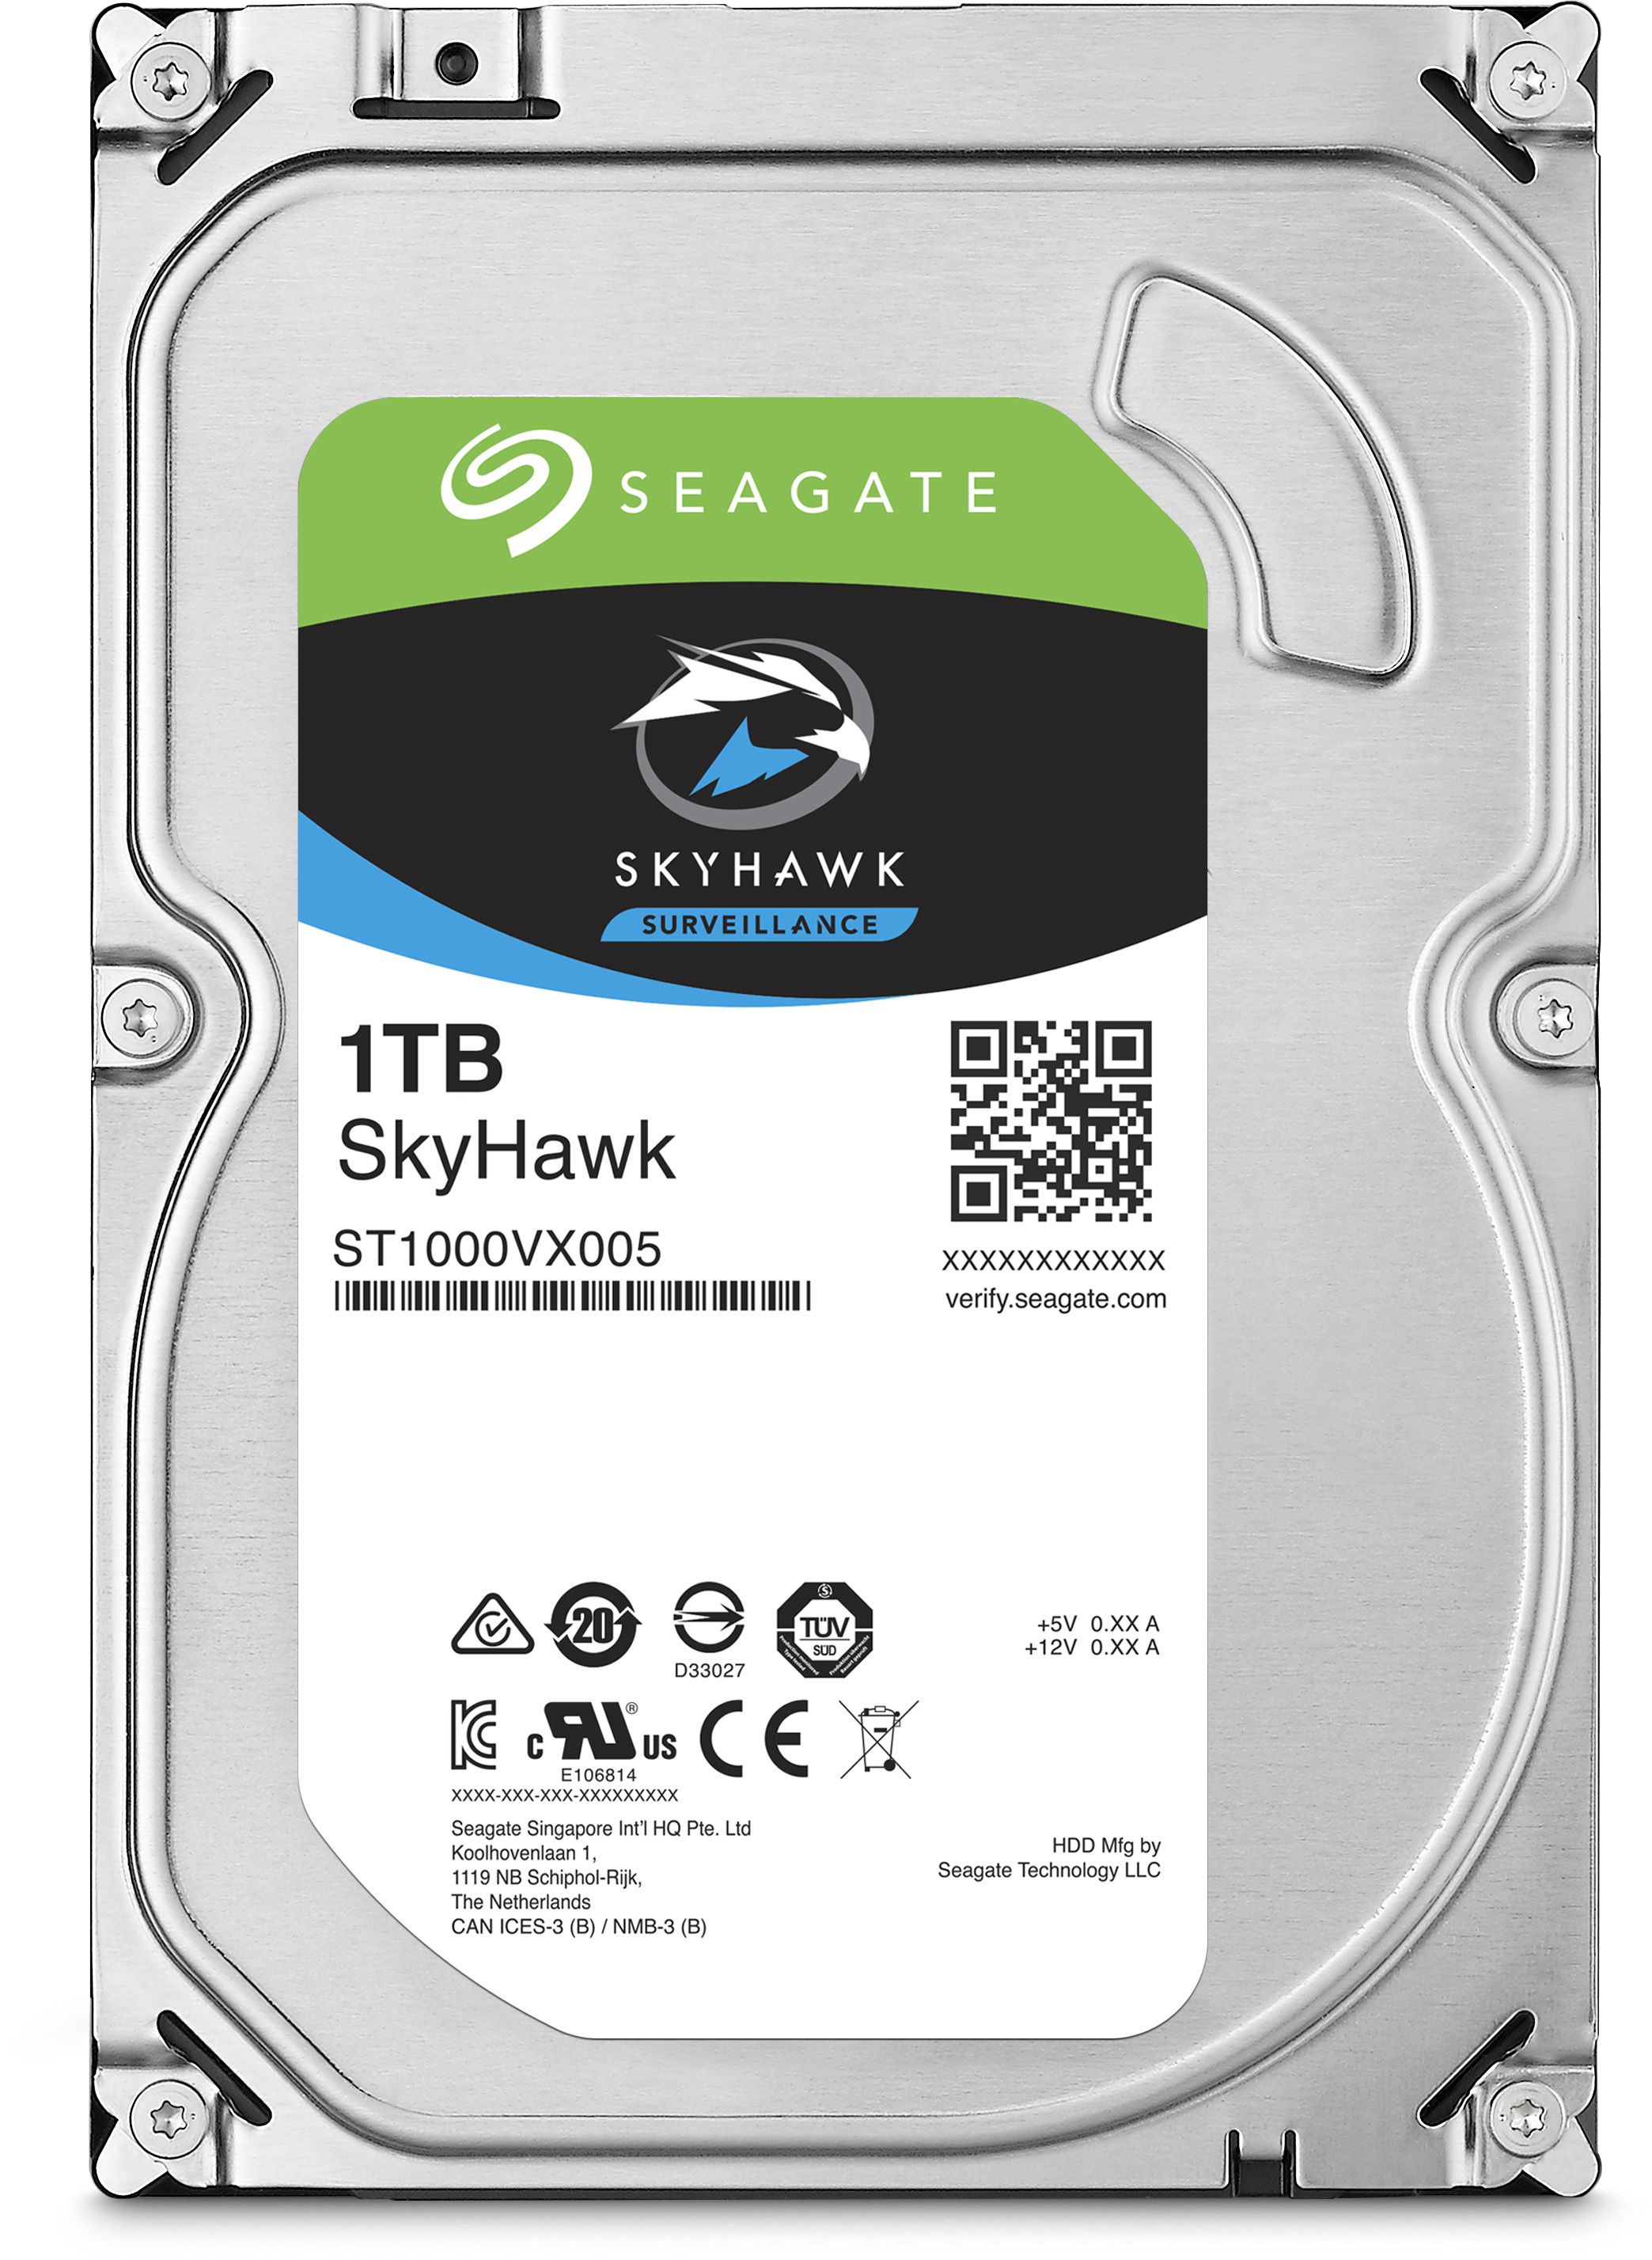 SEAGATE Surveillance Skyhawk 7200 1TB HDD 5900rpm SATA serial ATA 6Gb/s 64MB cache 3.5p 24x7 long-term usage BLK